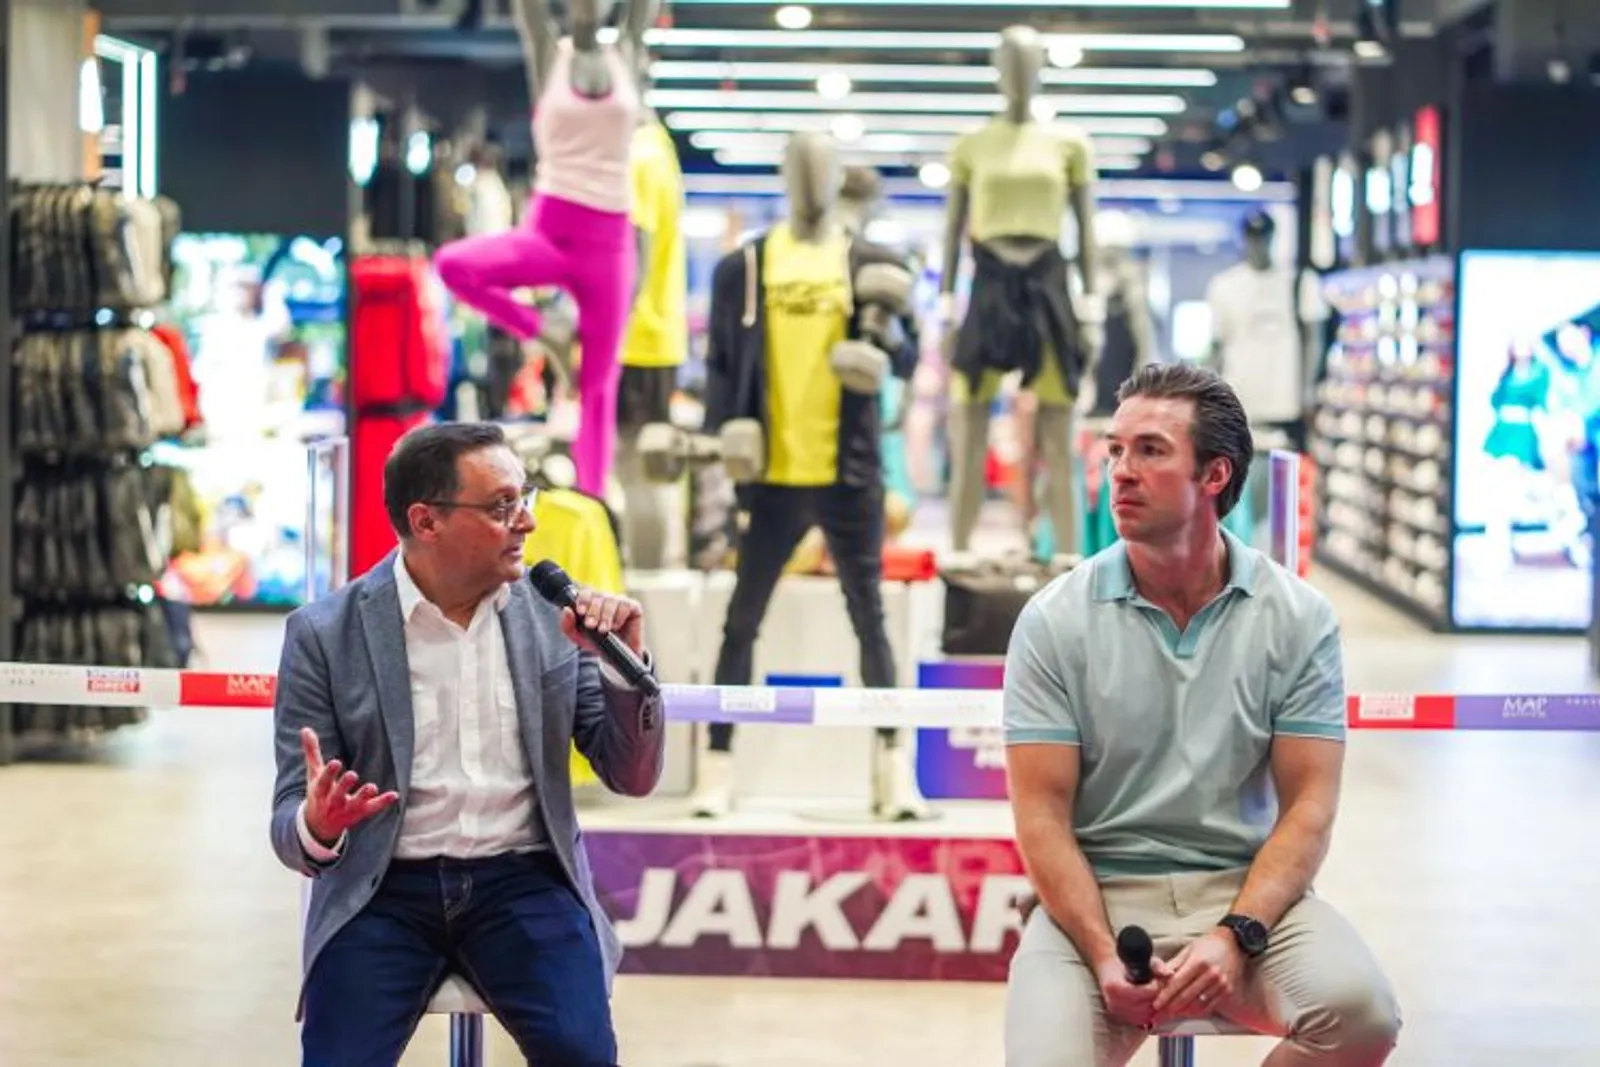 Sports Direct Pertama di Indonesia Kini Hadir di Kota Kasablanka Mall